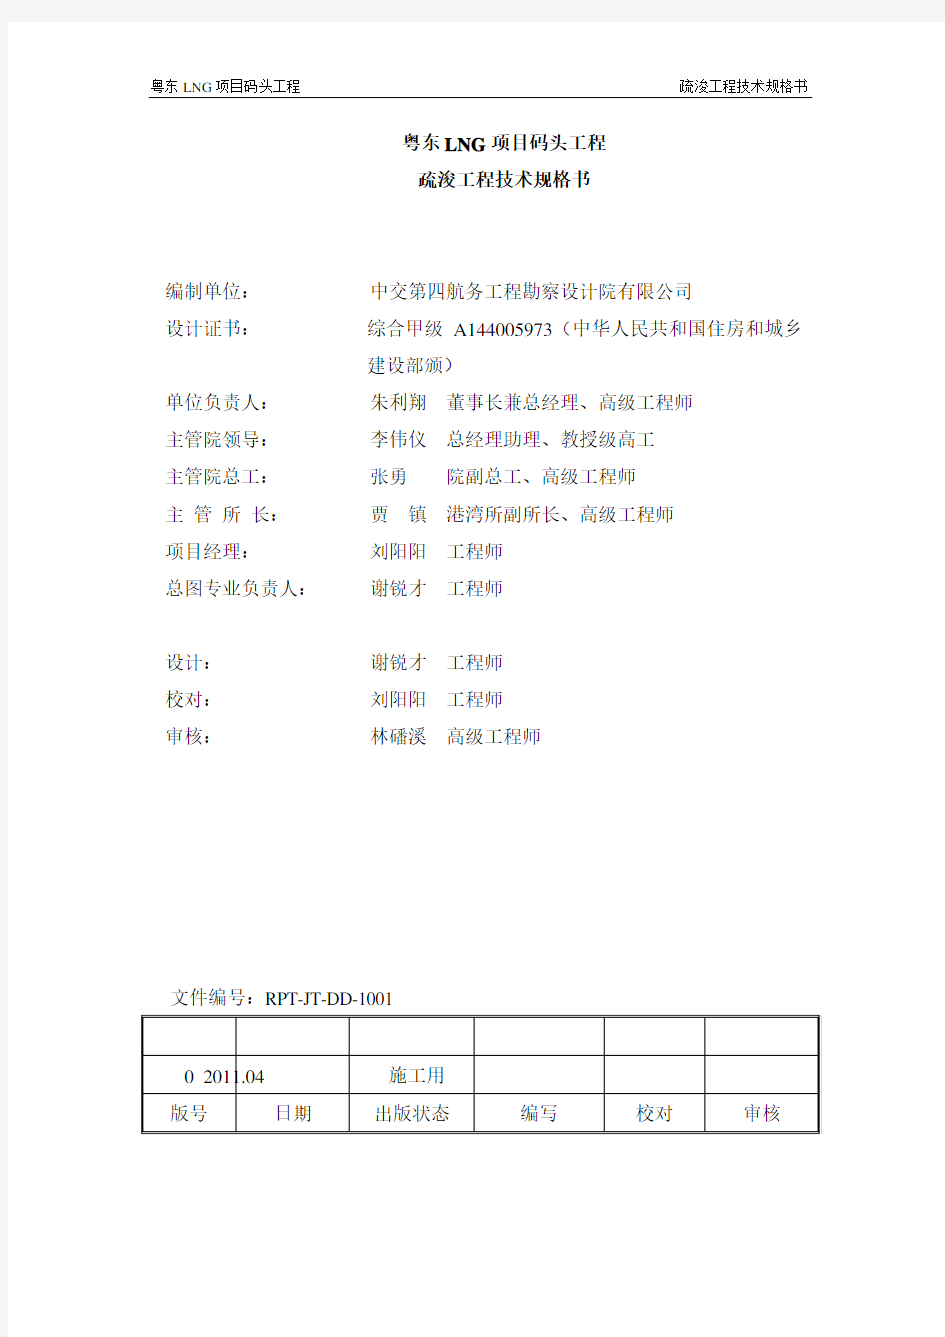 粤东LNG疏浚工程技术规格书